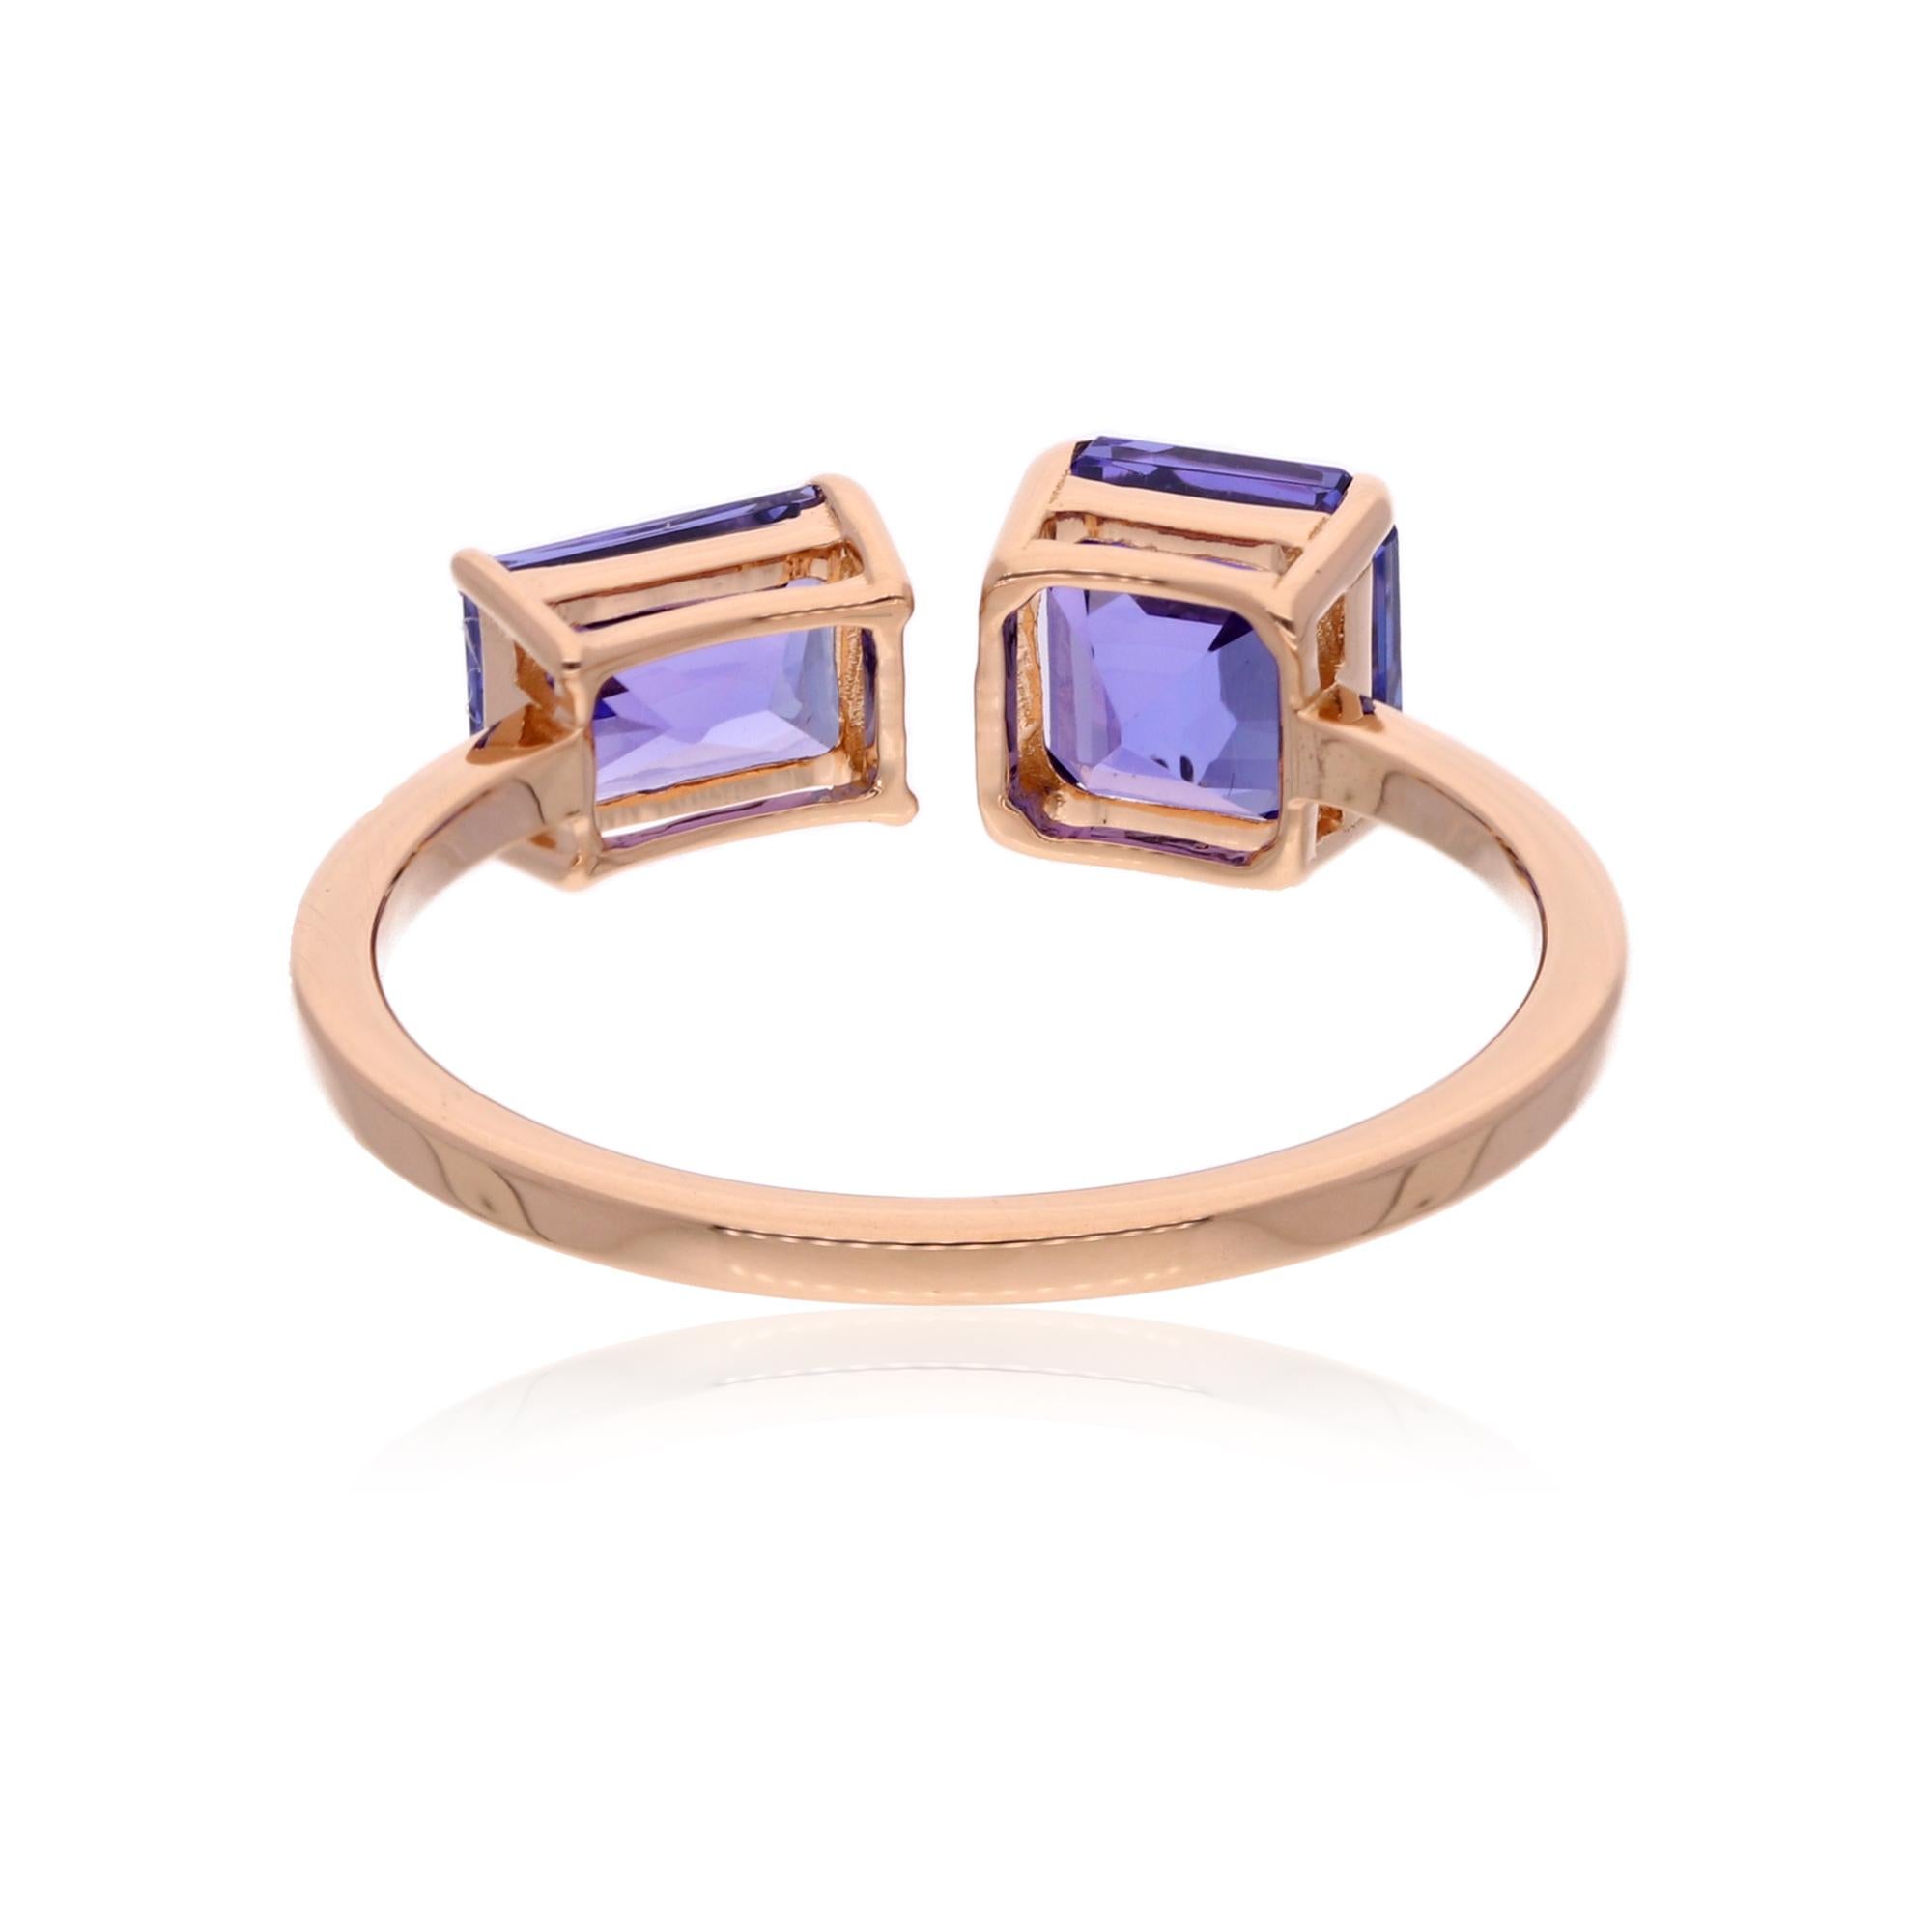 Square Cut 2.64 Carat Tanzanite Gemstone Cuff Ring Solid 14 Karat Rose Gold Fine Jewelry For Sale